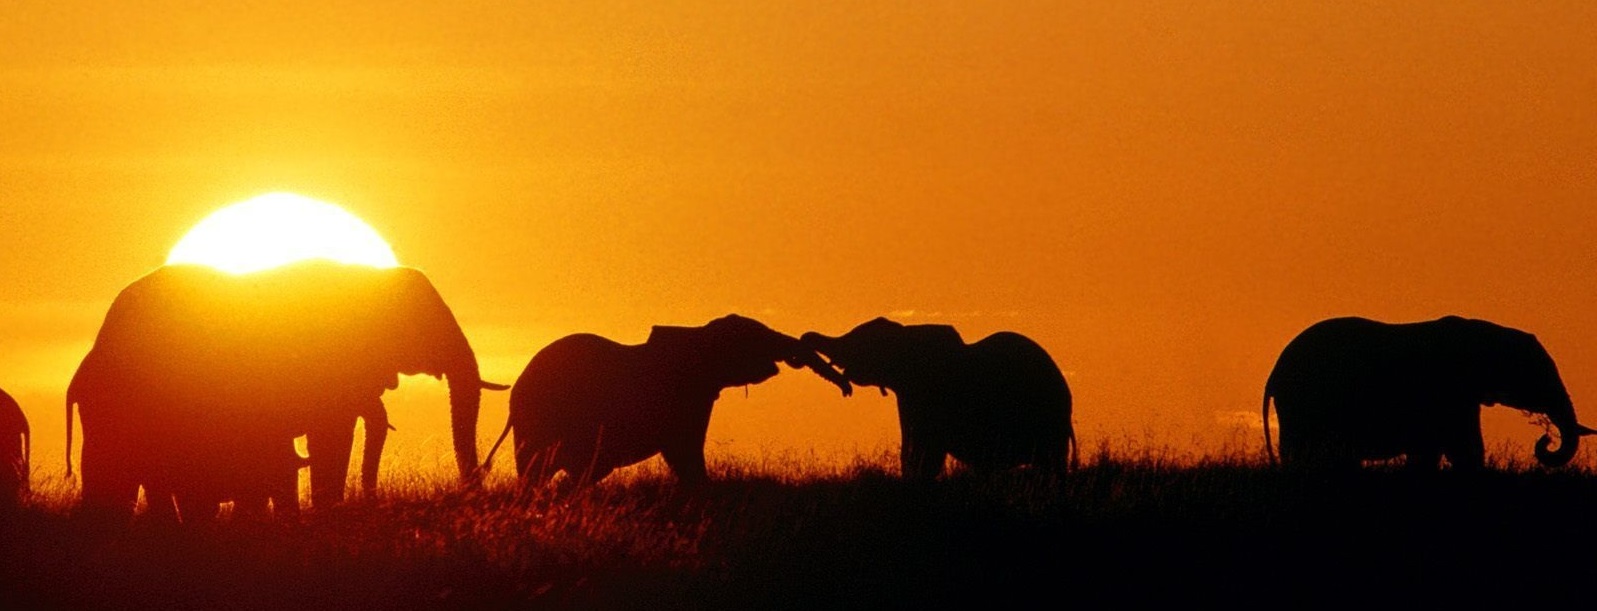 tumblr_static_african_elephants_masaai_mara_kenya_africa_besk__rd